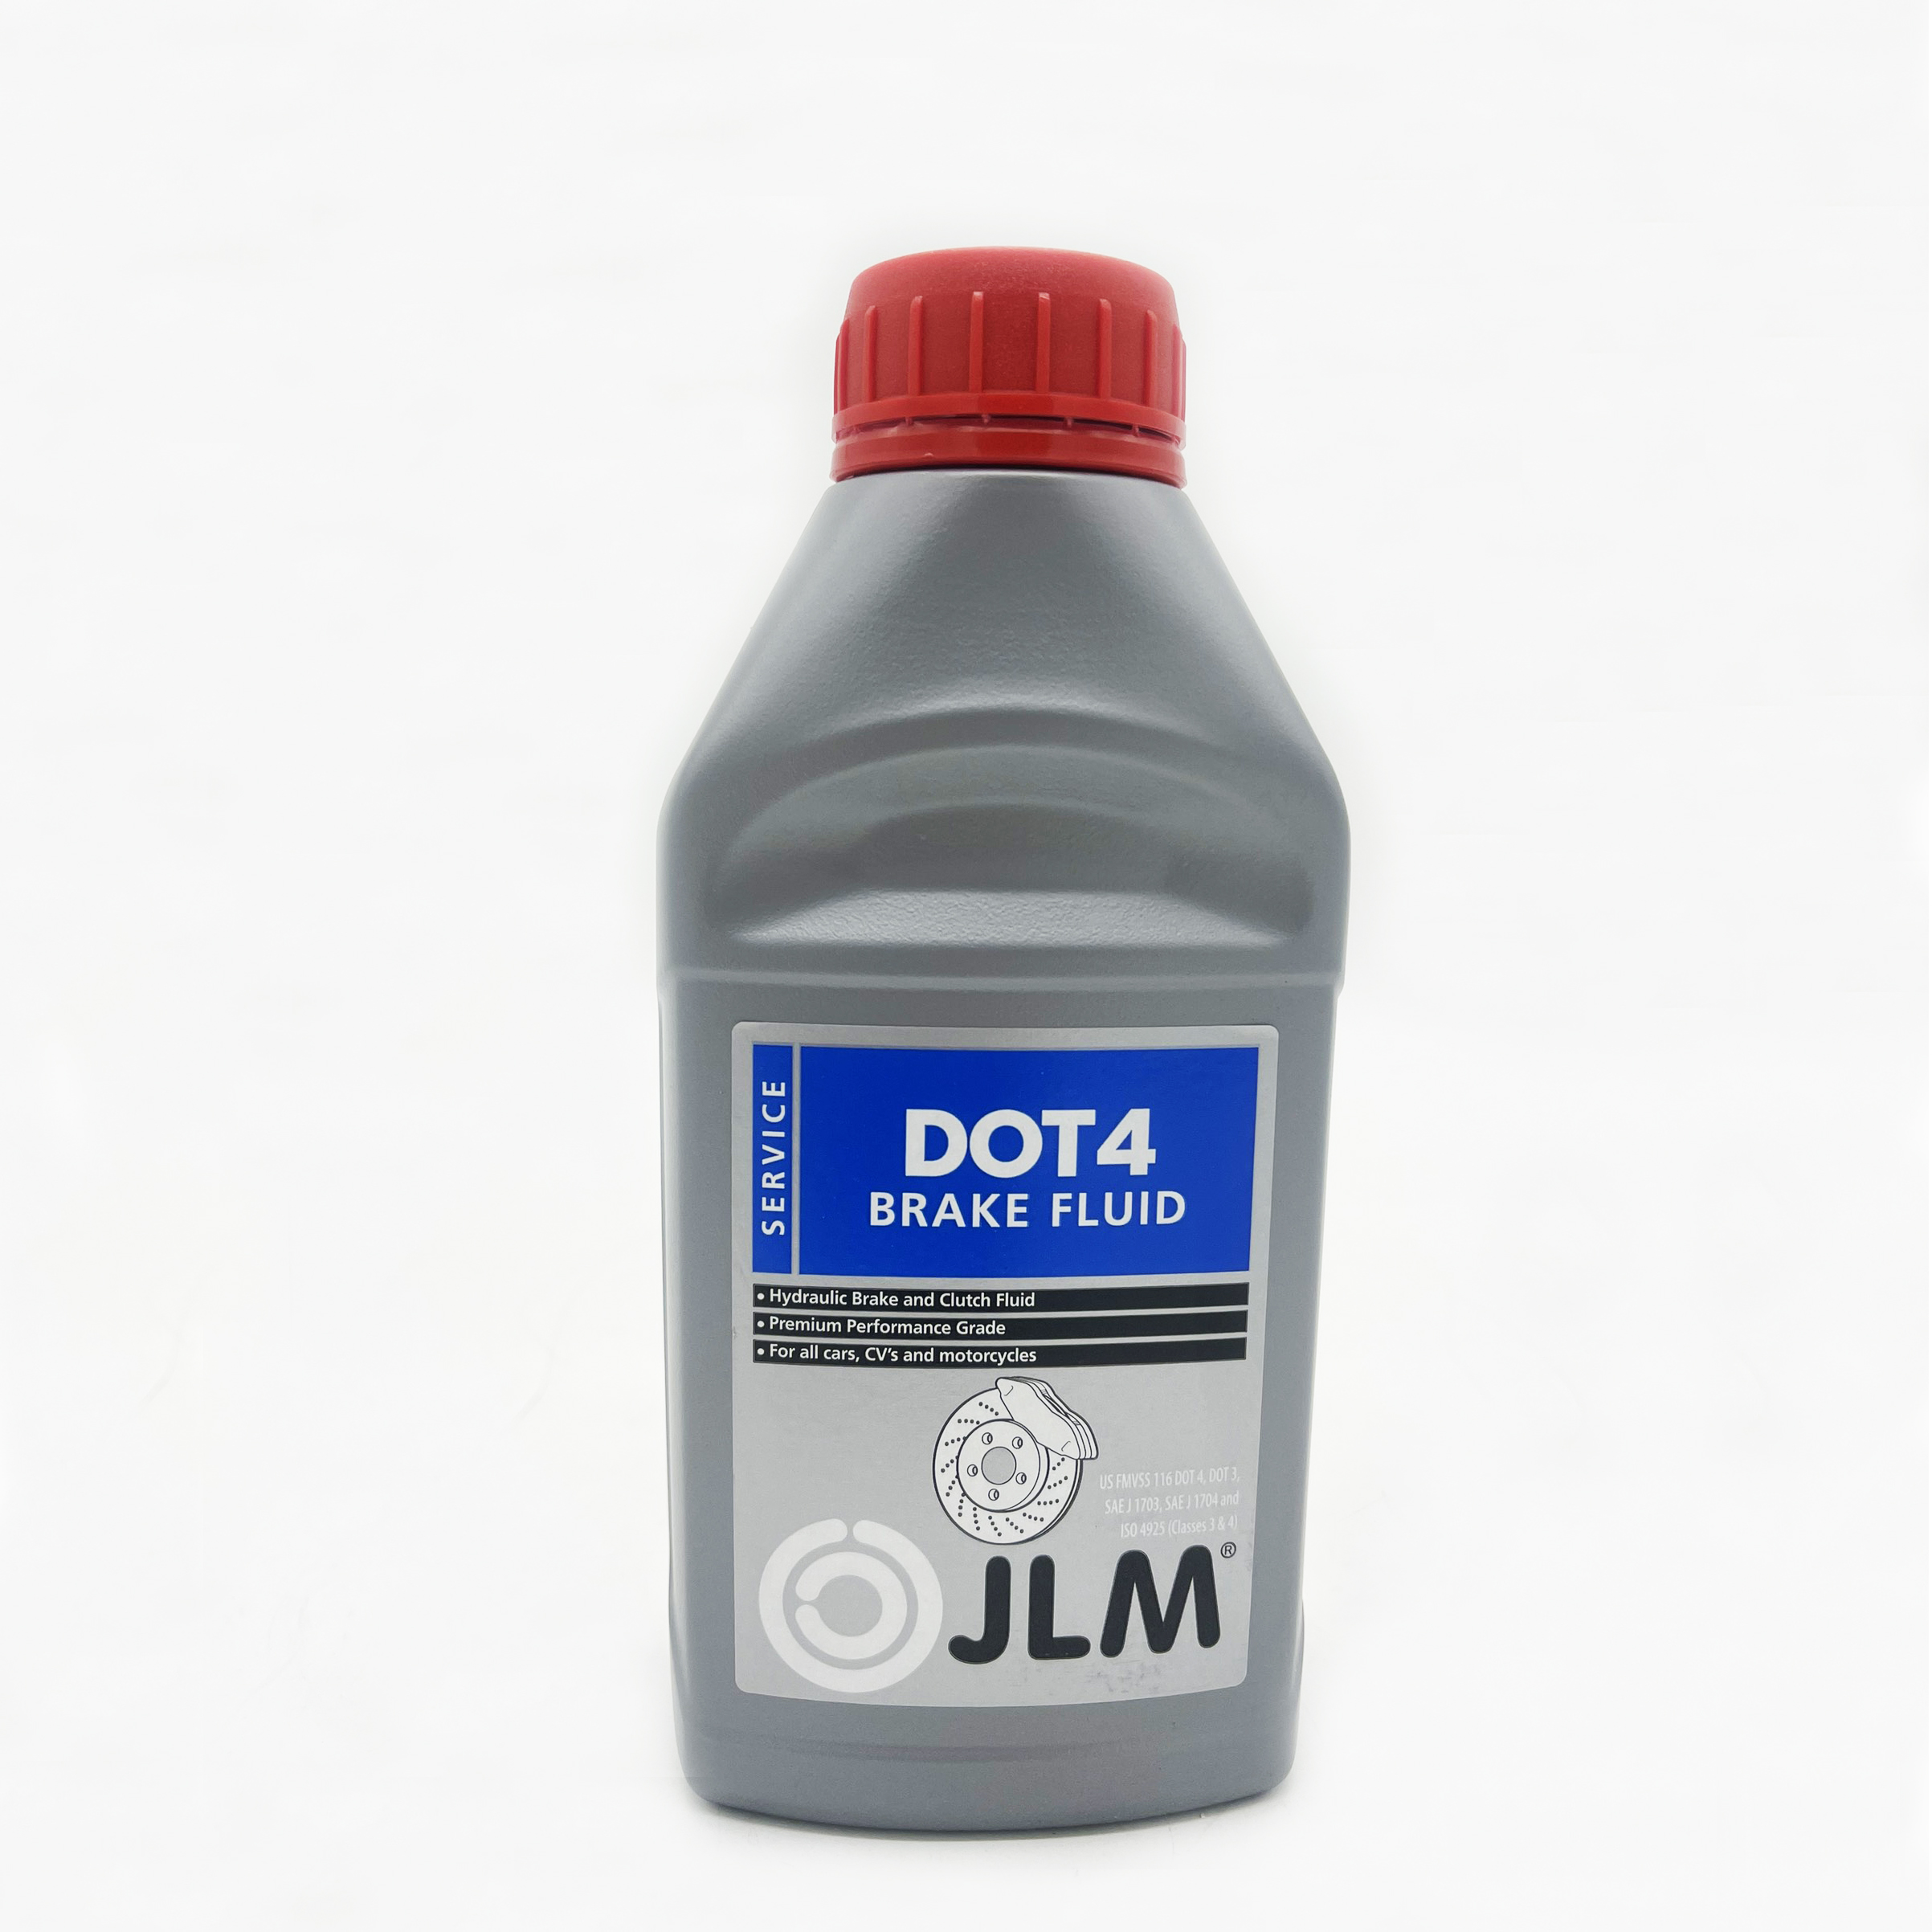 Dầu phanh Dot 4 (Brake Fluid) cho ô tô xuất xứ JLM Hà Lan, J04845 dung tích 1000ml, tiêu chuẩn ISO 4925 (Classes 3 &amp; 4)